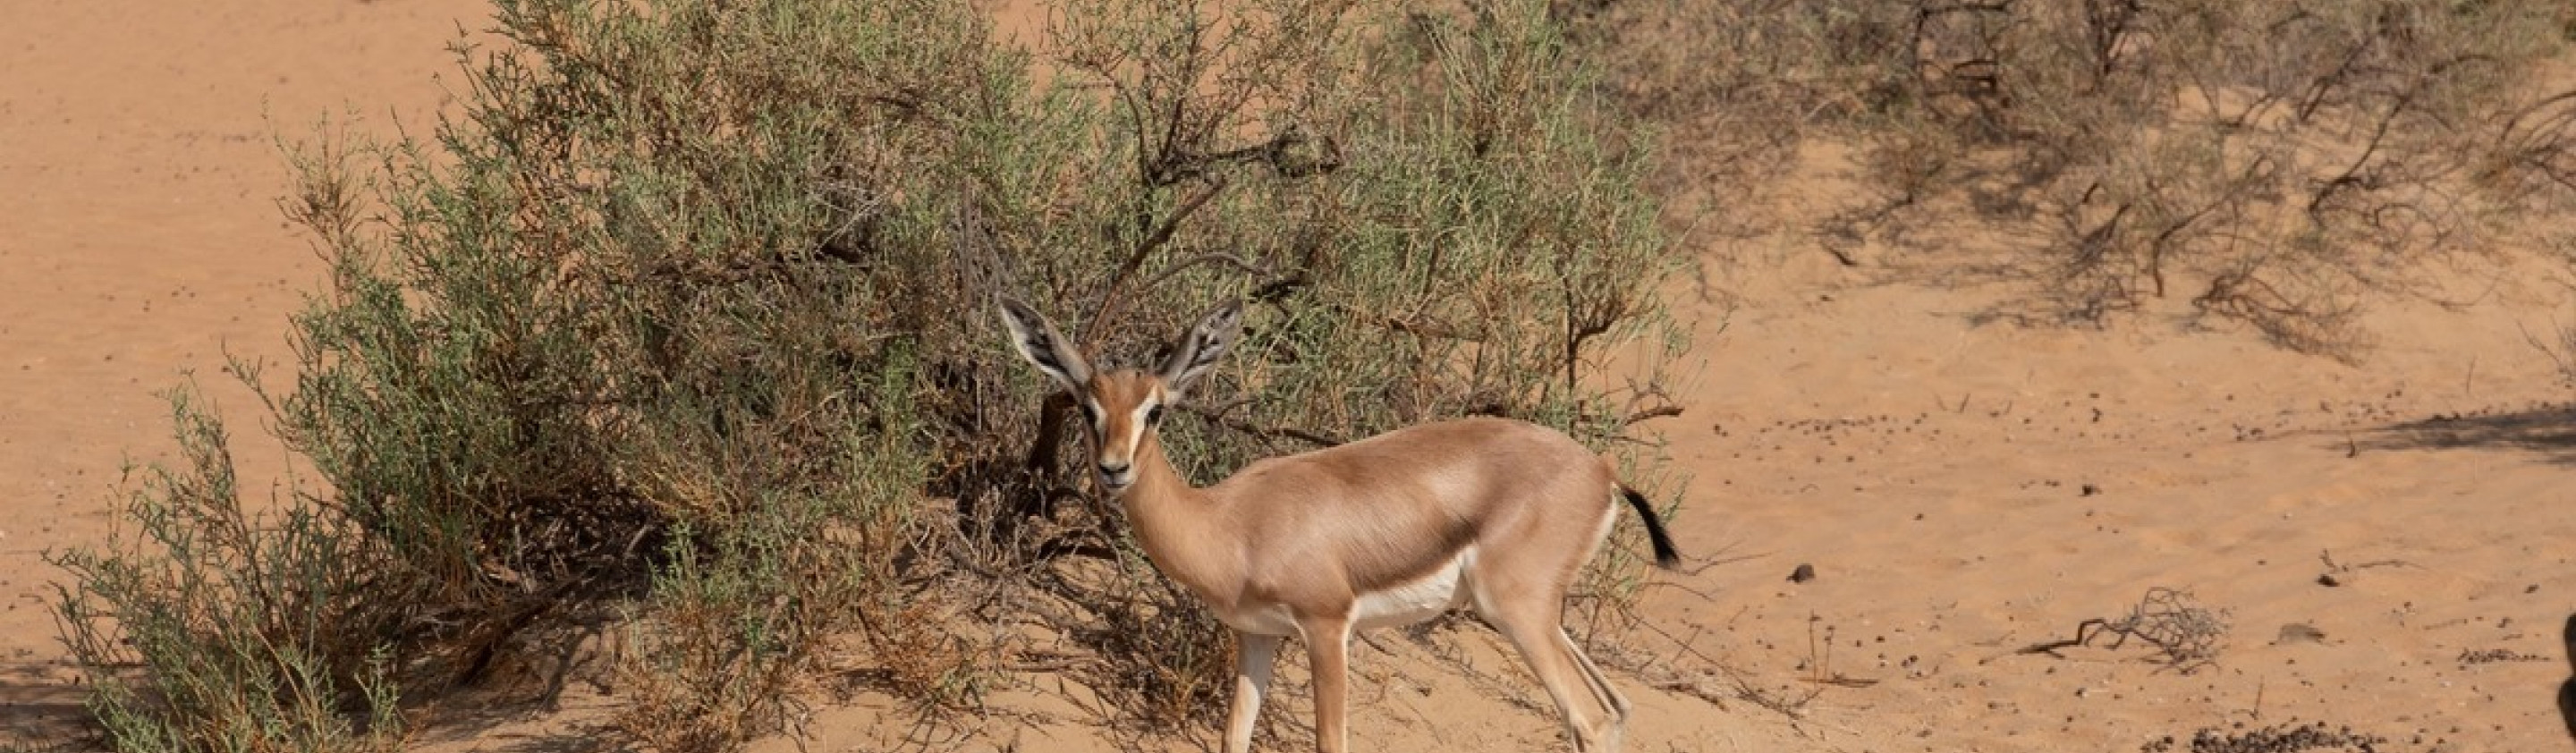 dubai desert conservation reserve, gazelle, oliver wheeldon, UAE 